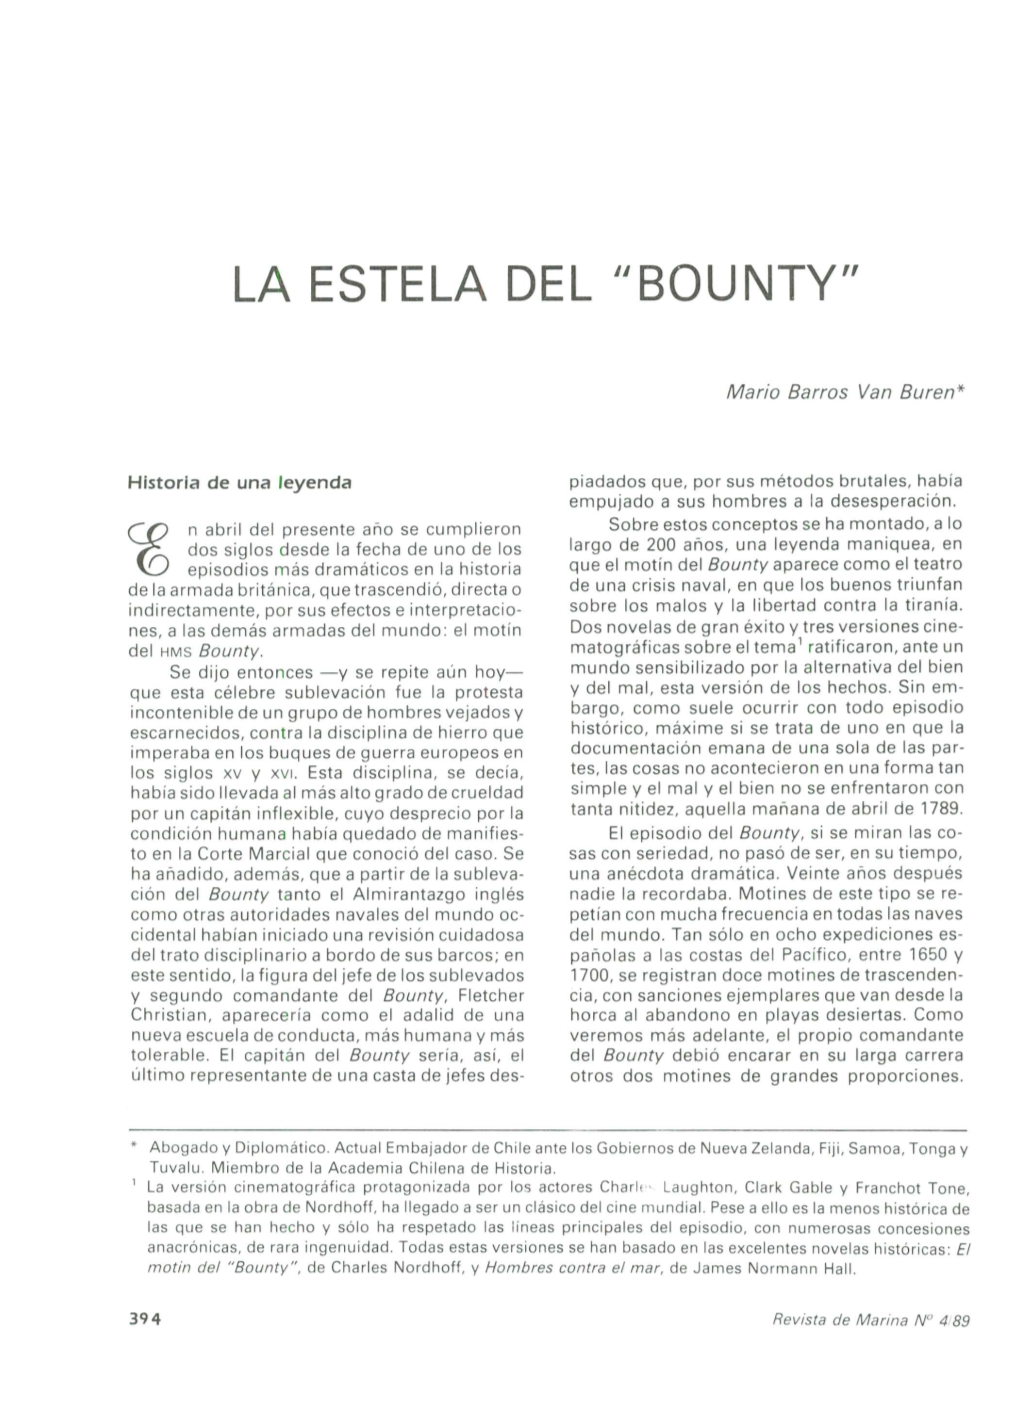 La Estela Del "Bounty"